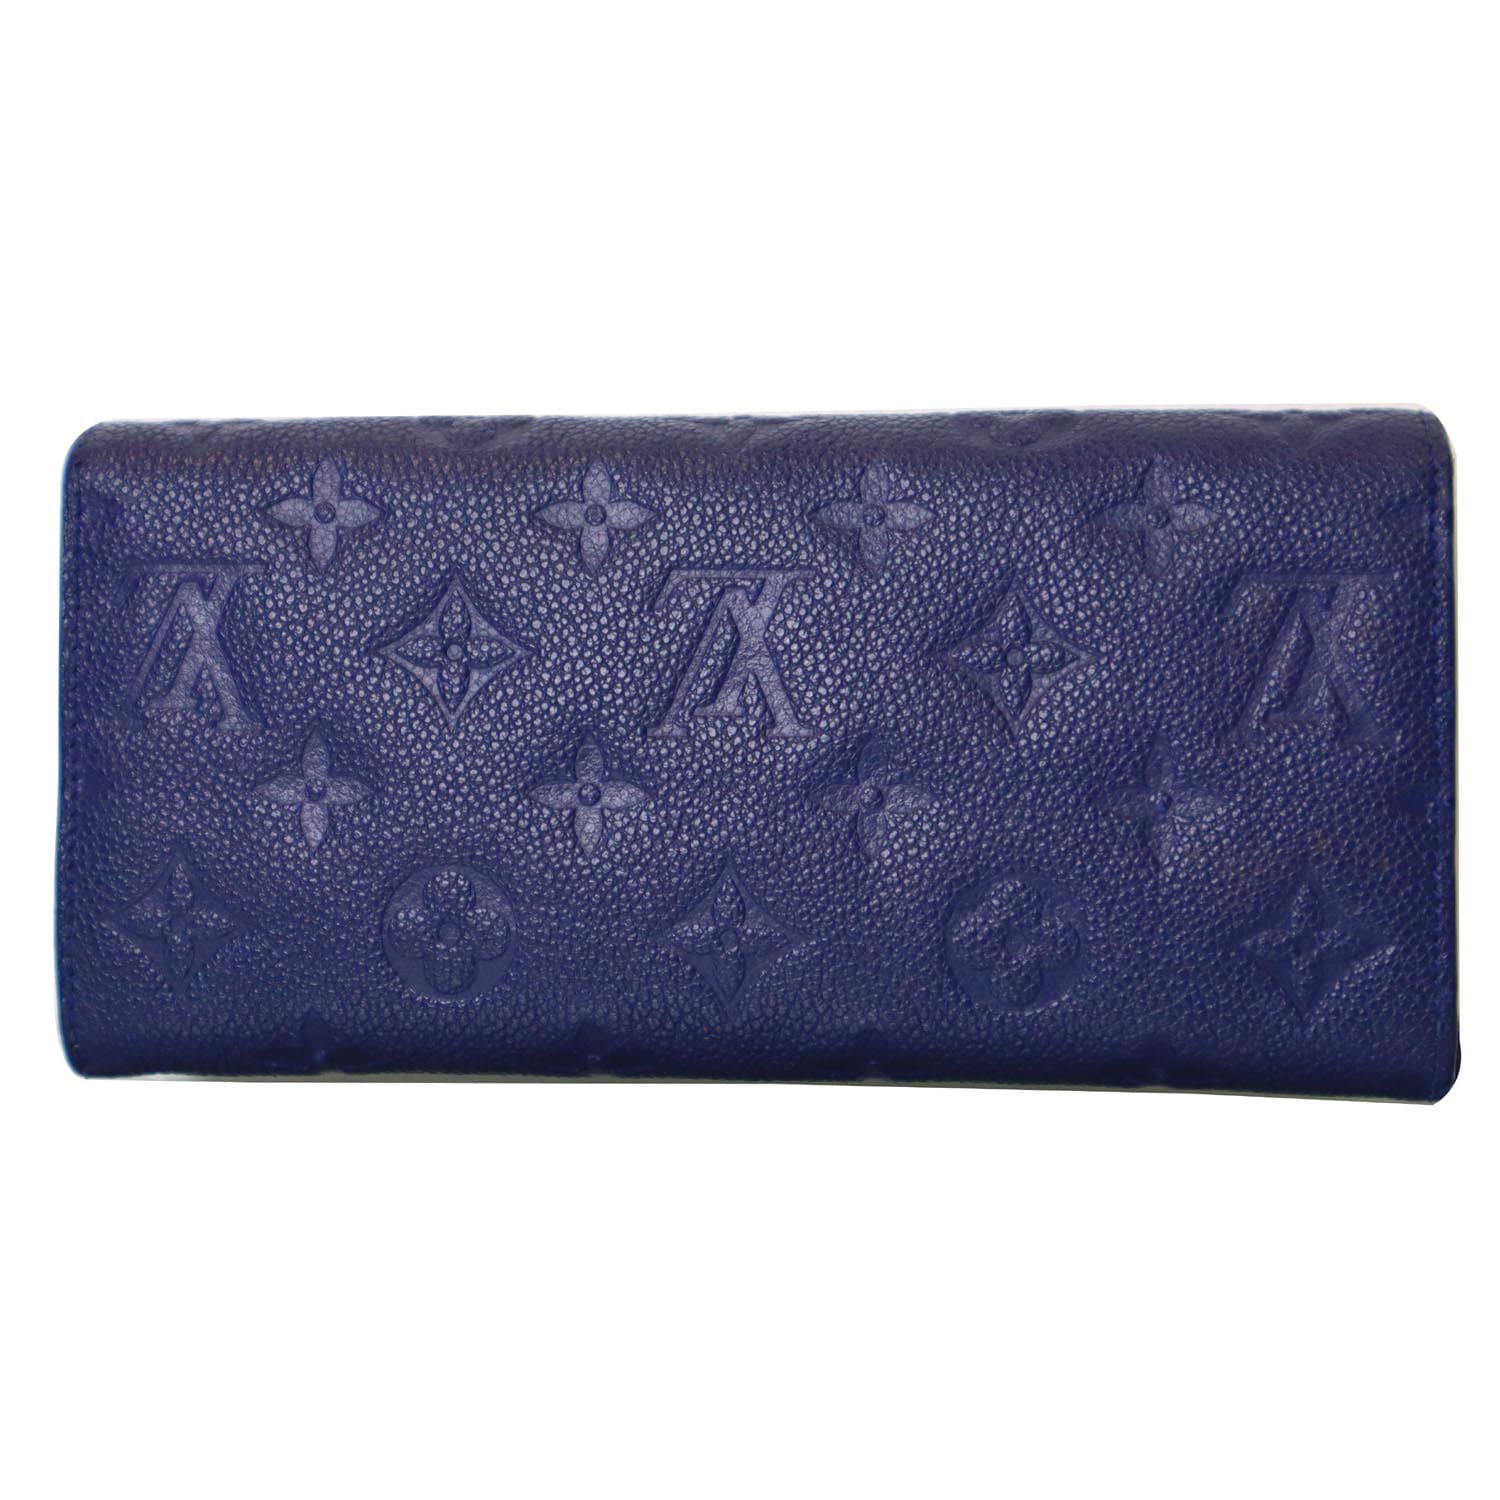 Preloved Louis Vuitton Navy Blue Monogram Empreinte Leather